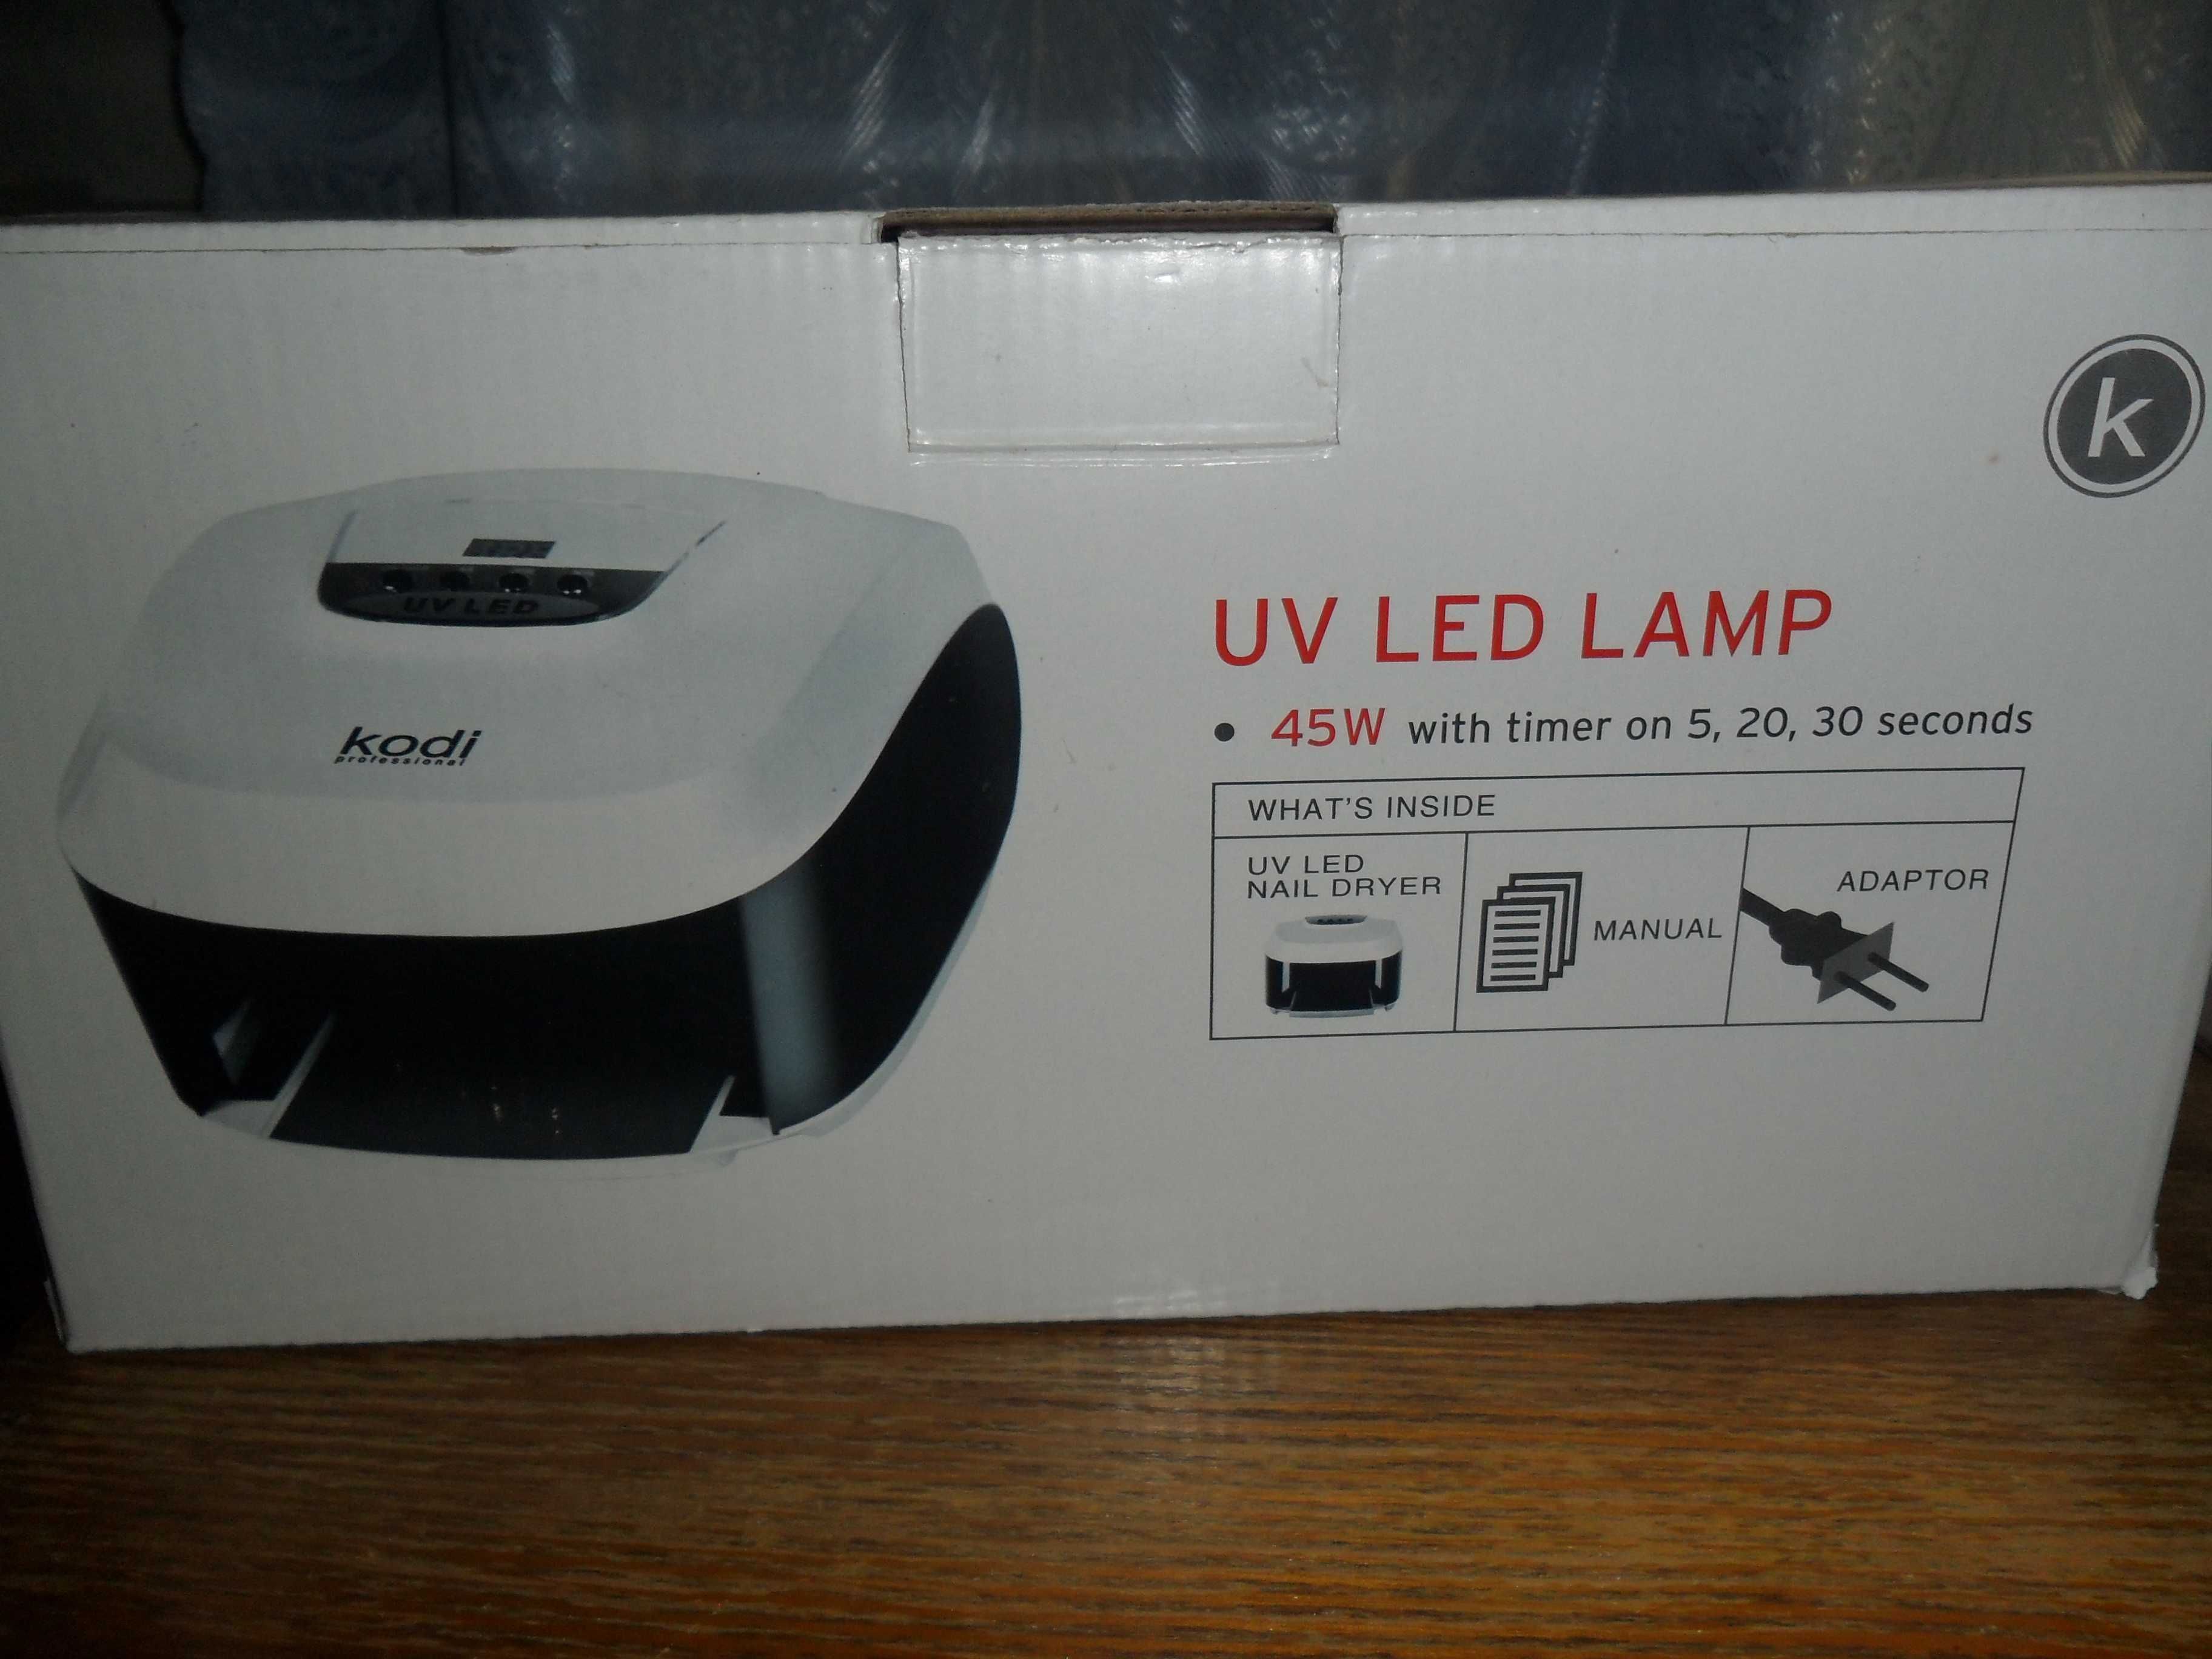 UV LED-лампа Kodi Professional для полимеризации геля НОВАЯ